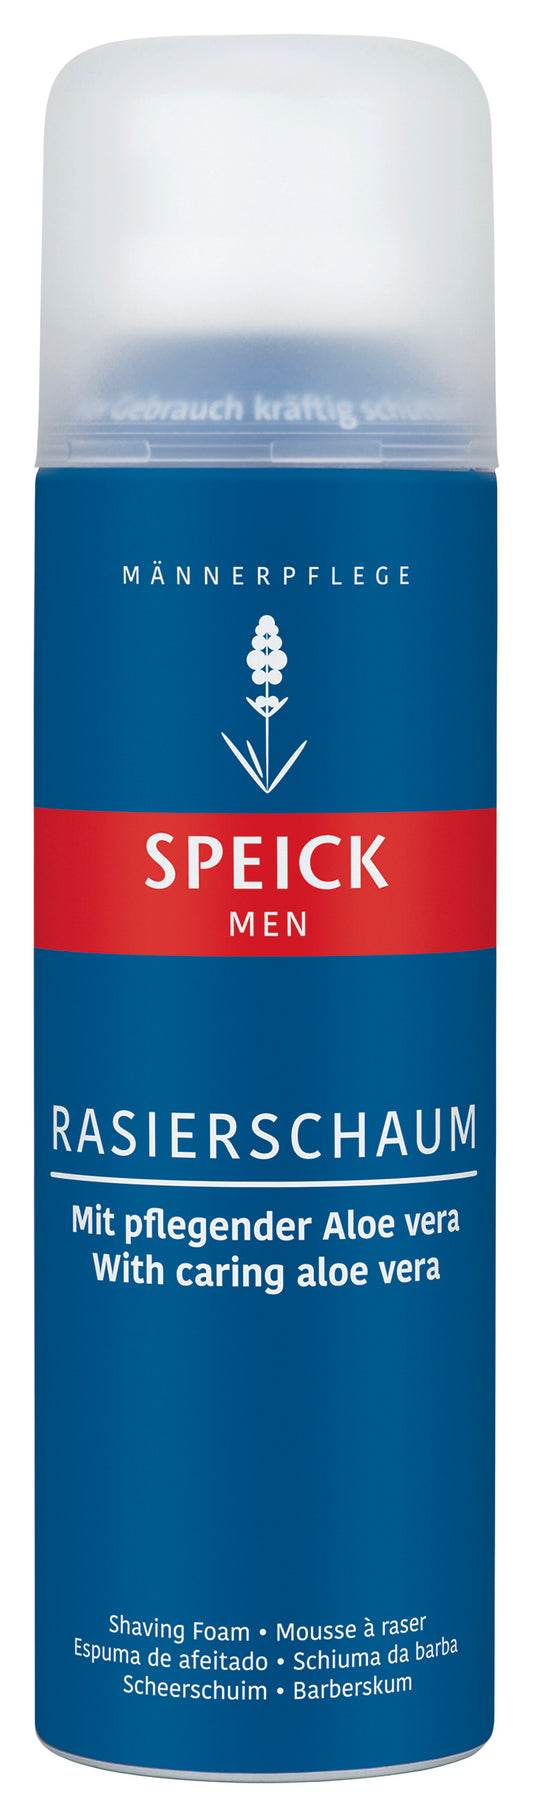 Speick Men Rasierschaum (200ml)